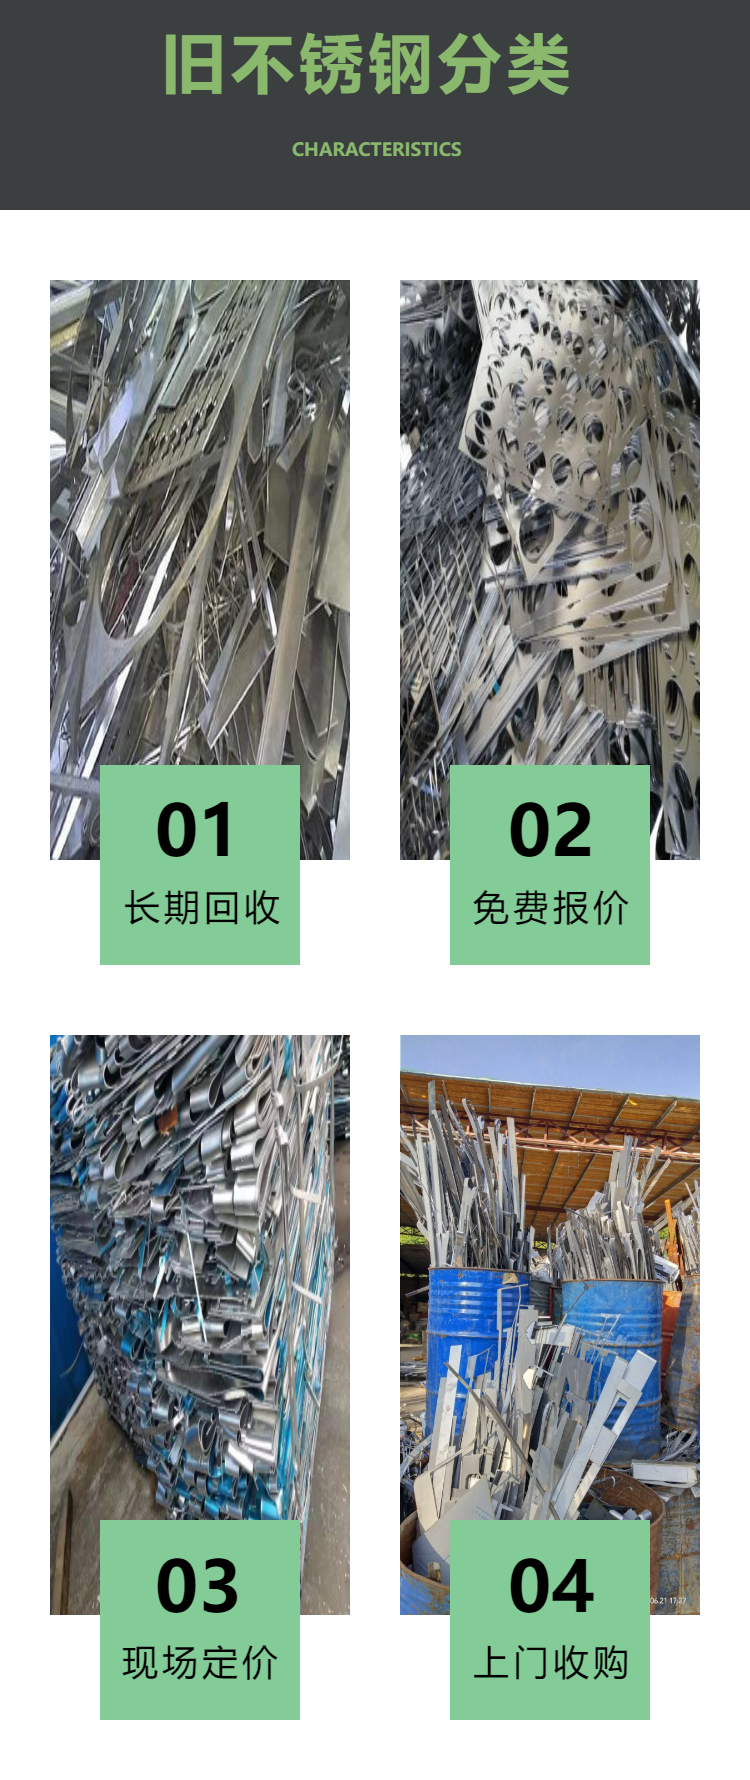 南山 宝安区 龙华 废不锈钢回收公司 长期回收 工厂各种不锈钢废料